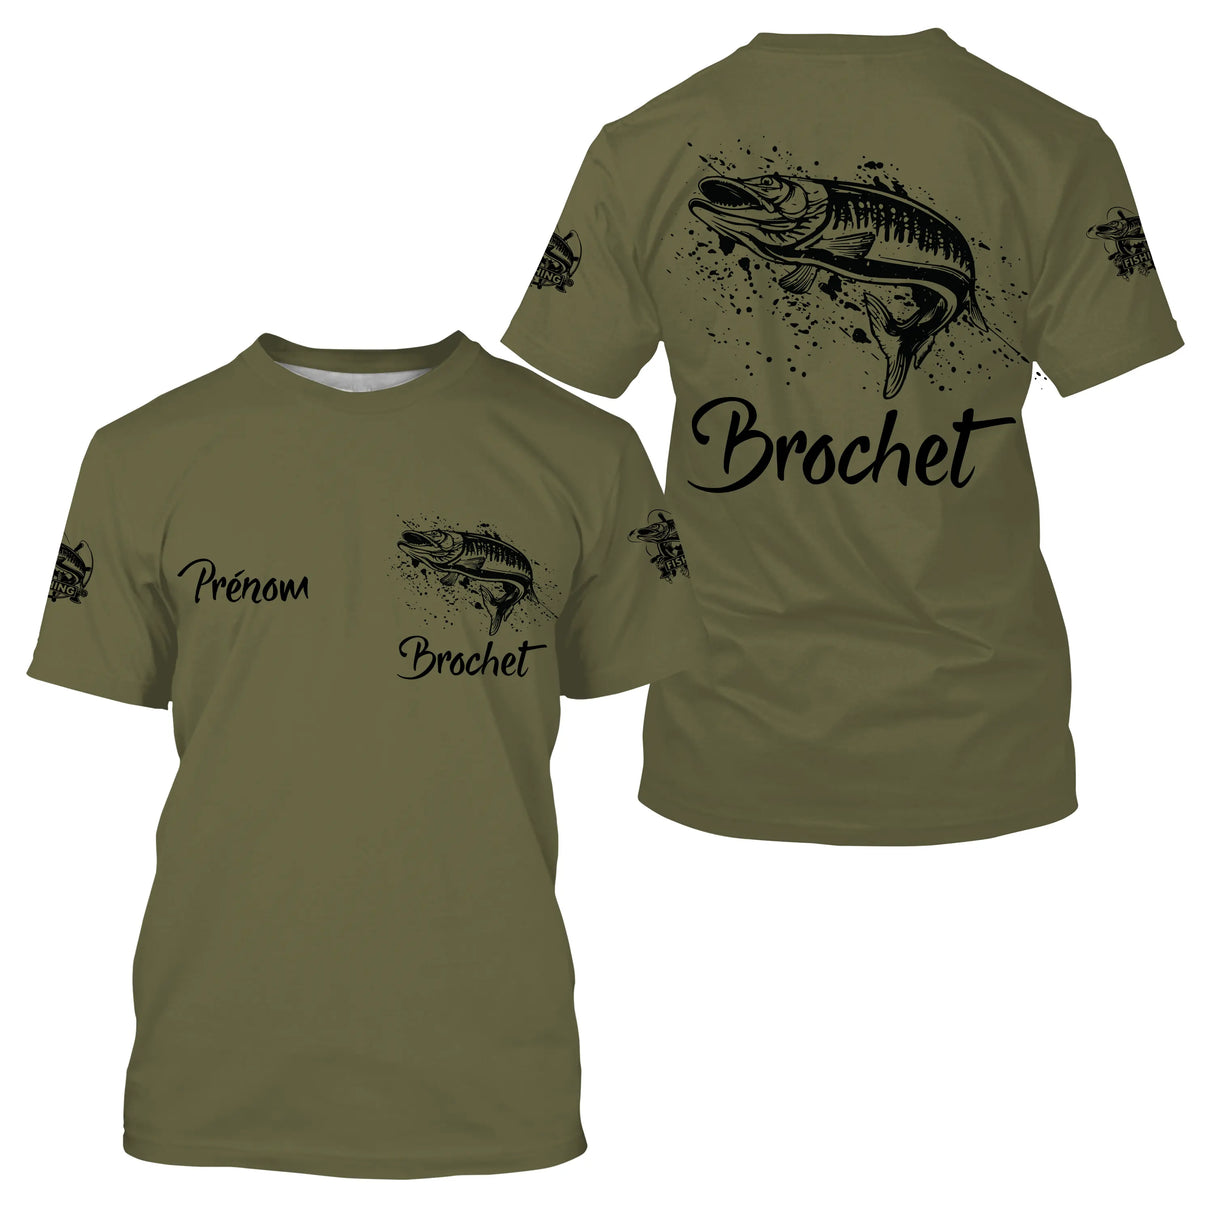 T-shirt da pesca al luccio, regalo originale per pescatori, abbigliamento personalizzato per la pesca - CT21122228